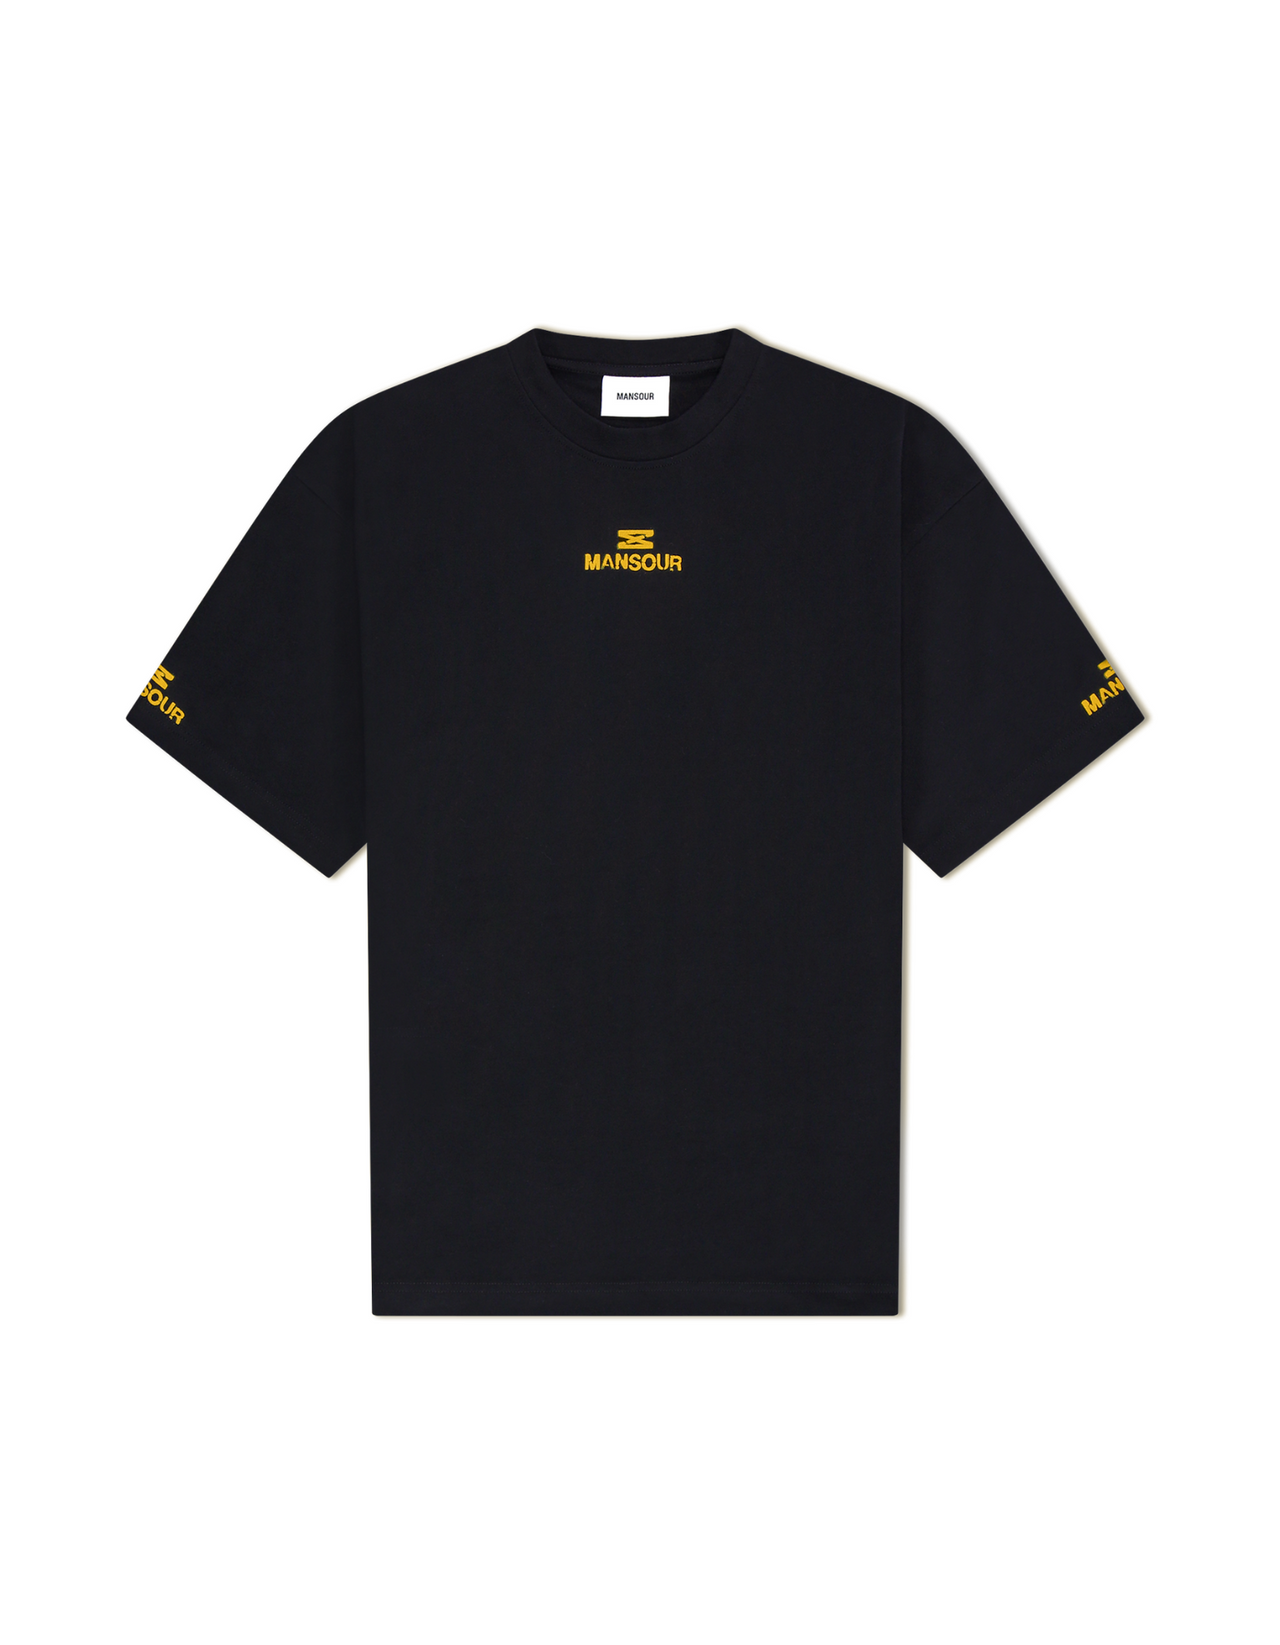 Hourglass track t-shirt yellow black